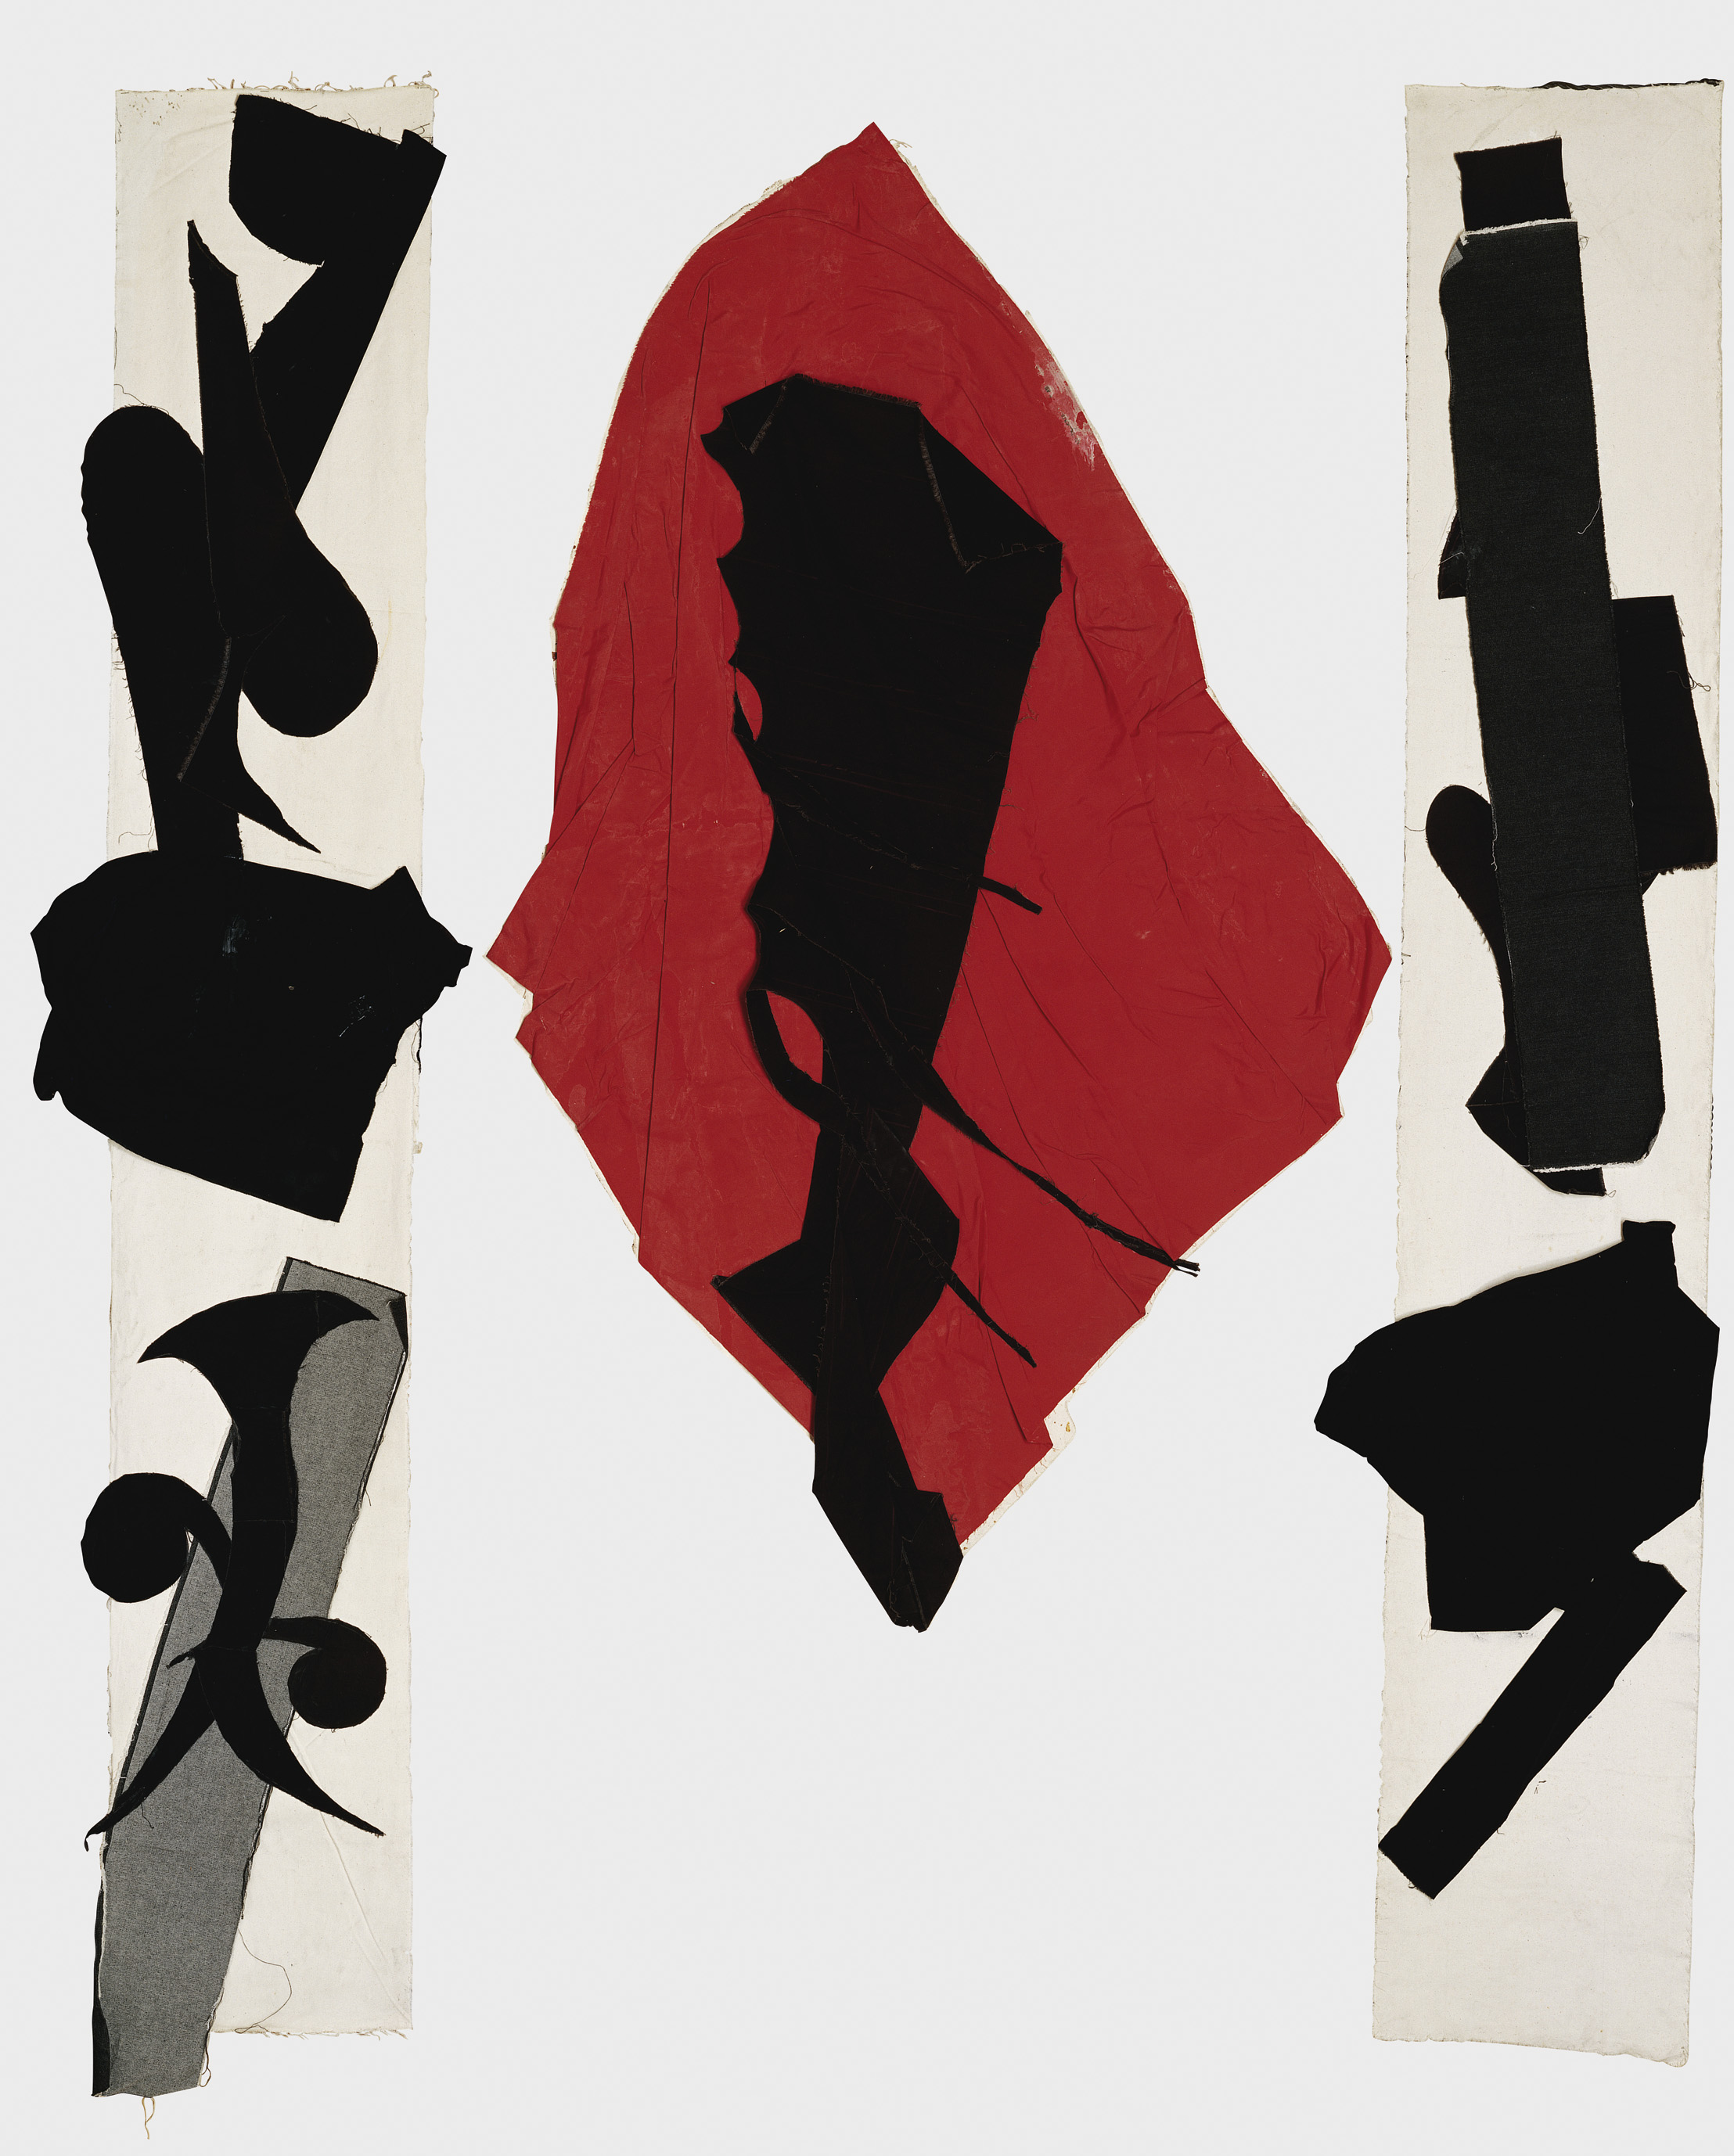 陳幸婉  | 悠遊（紅黑） 布料、裱貼, 1994-1998 287 x 250 x 25 cm  臺北市立美術館典藏 的圖說